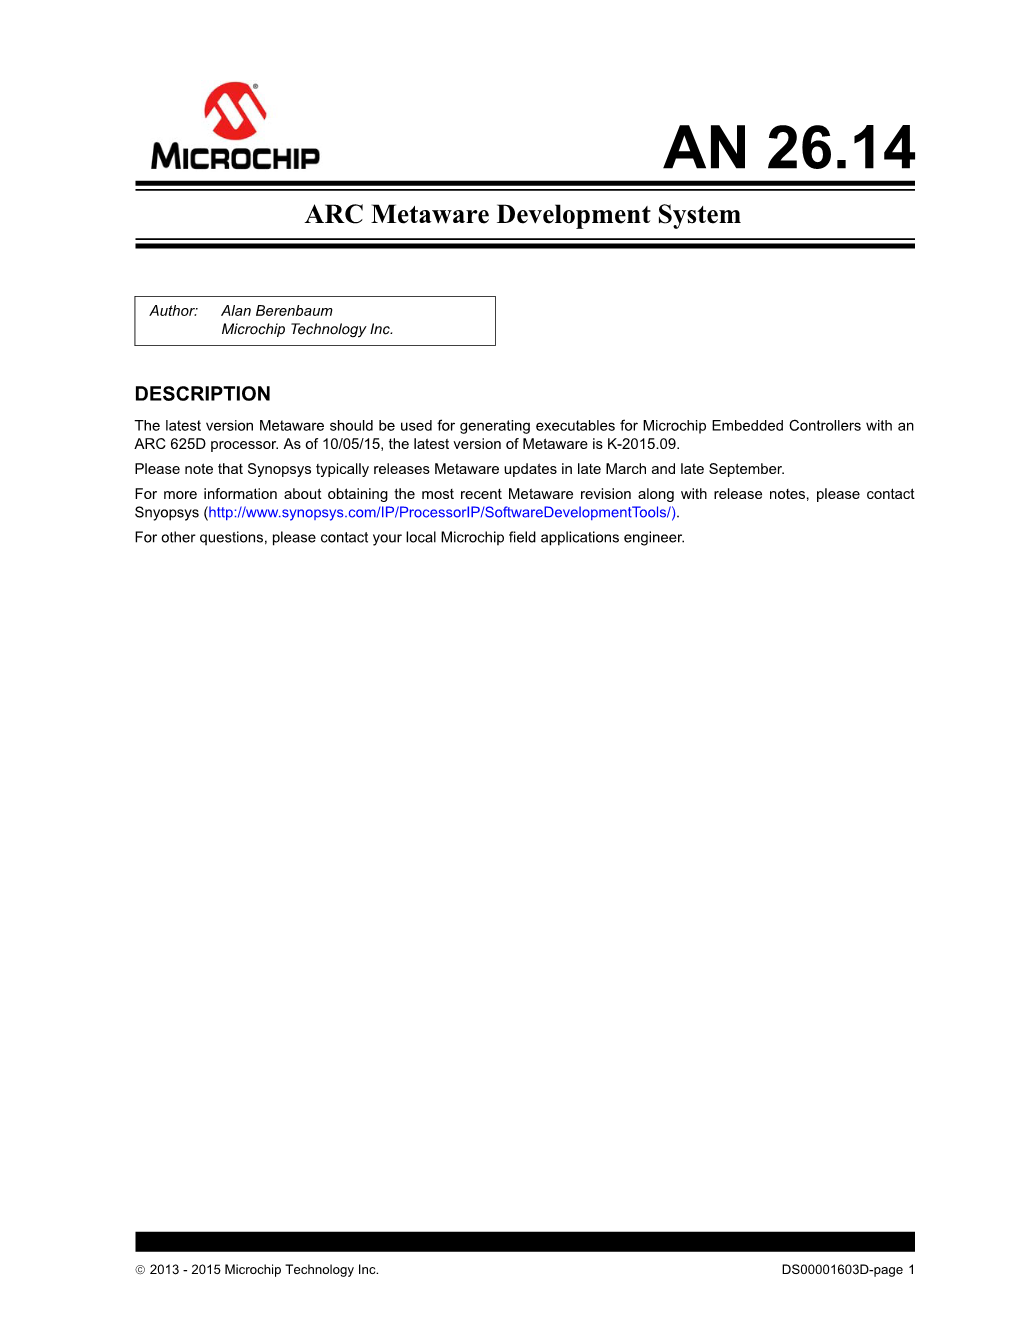 AN 26.14 ARC Metaware Development System